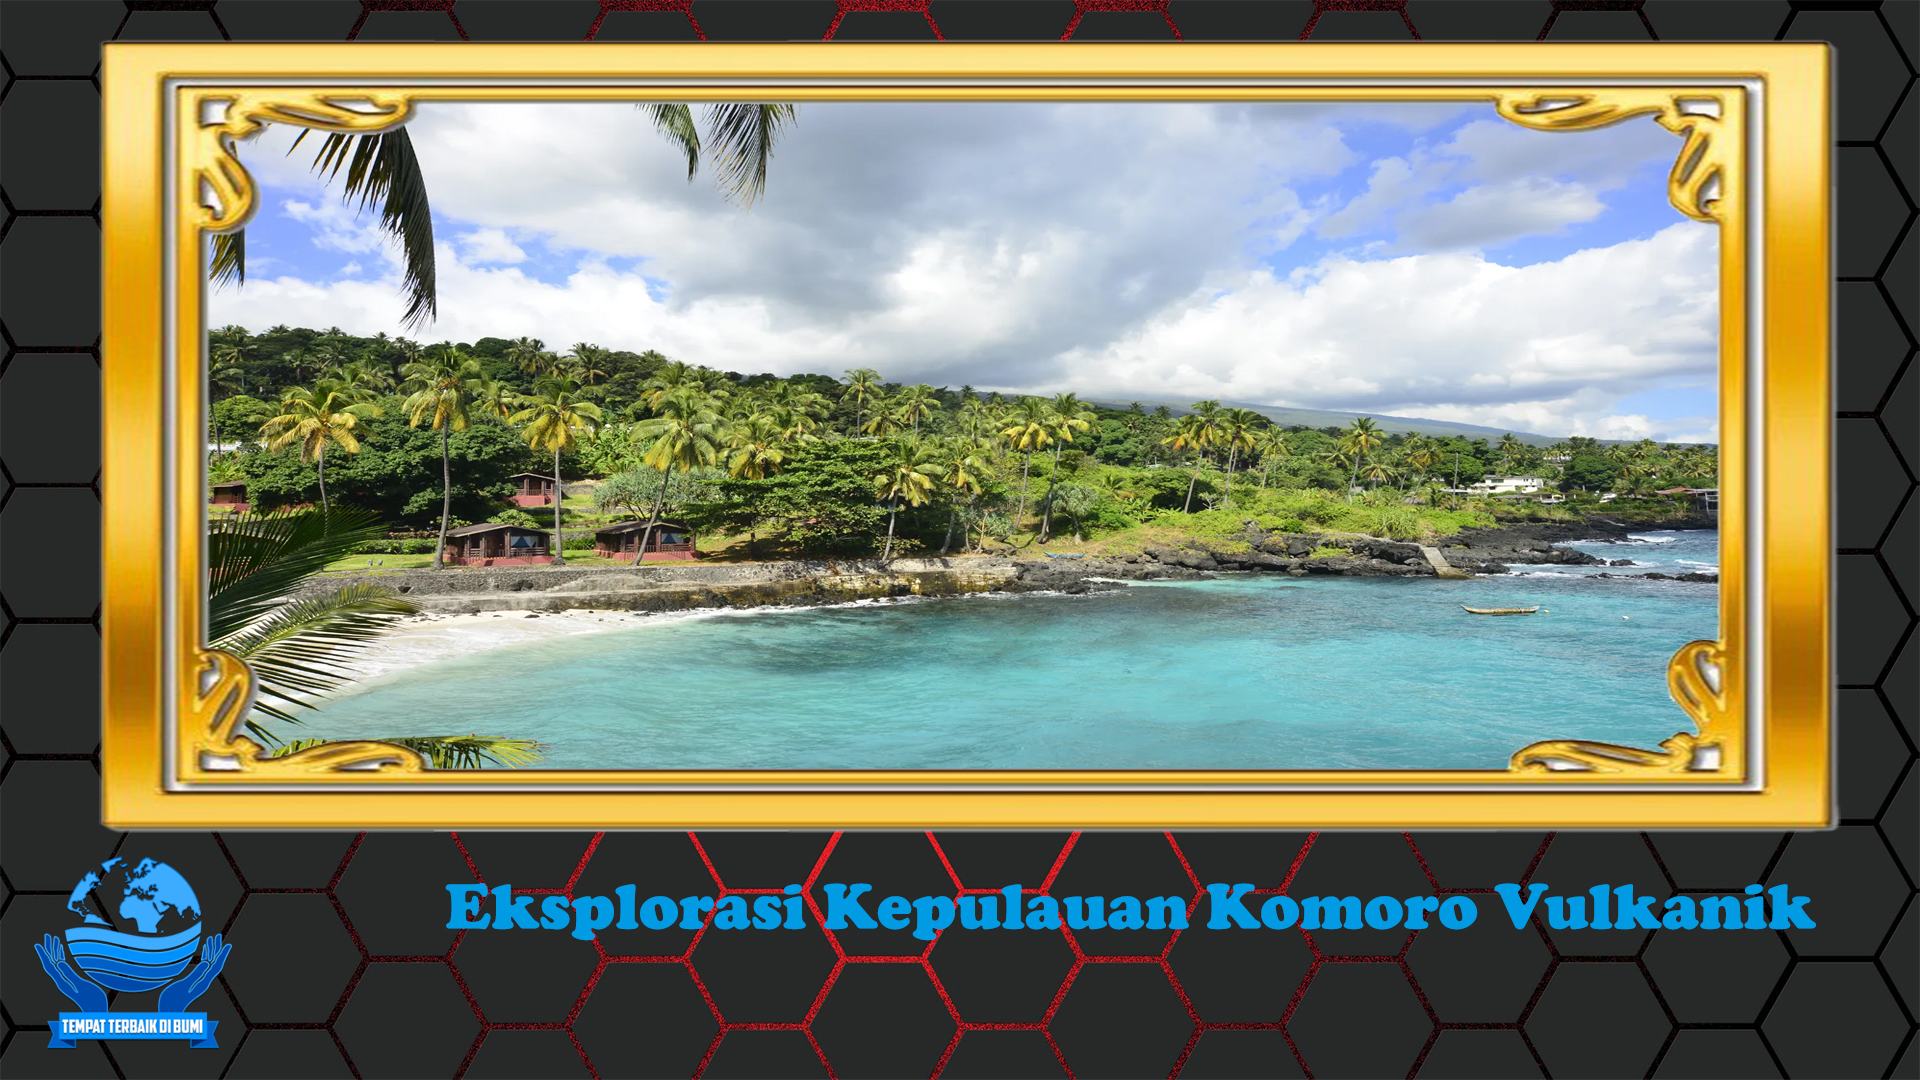 Eksplorasi Kepulauan Komoro Vulkanik